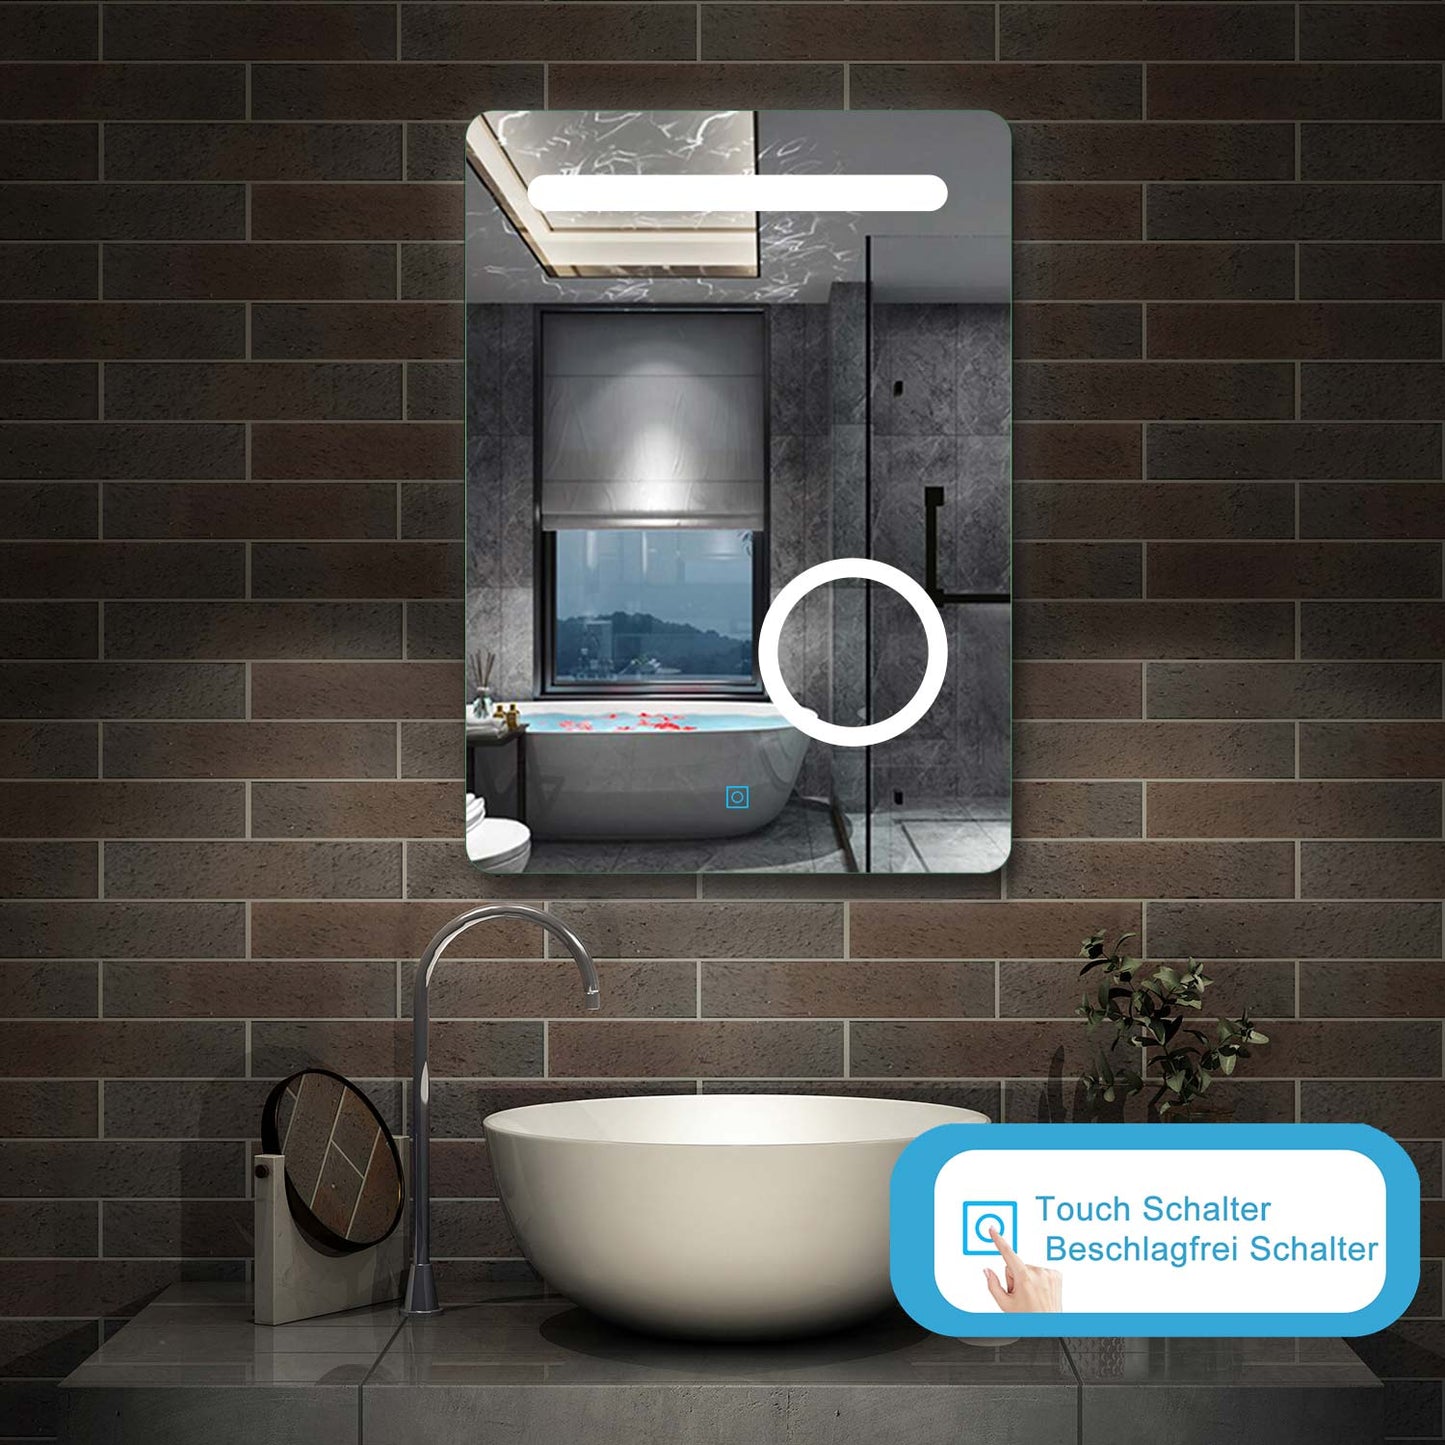 LED Badspiegel 50×70cm Wandspiegel mit Touch, Beschlagfrei,3-Fach Vergrößerung Schminkspiegel IP44 Kaltweiß energiesparend